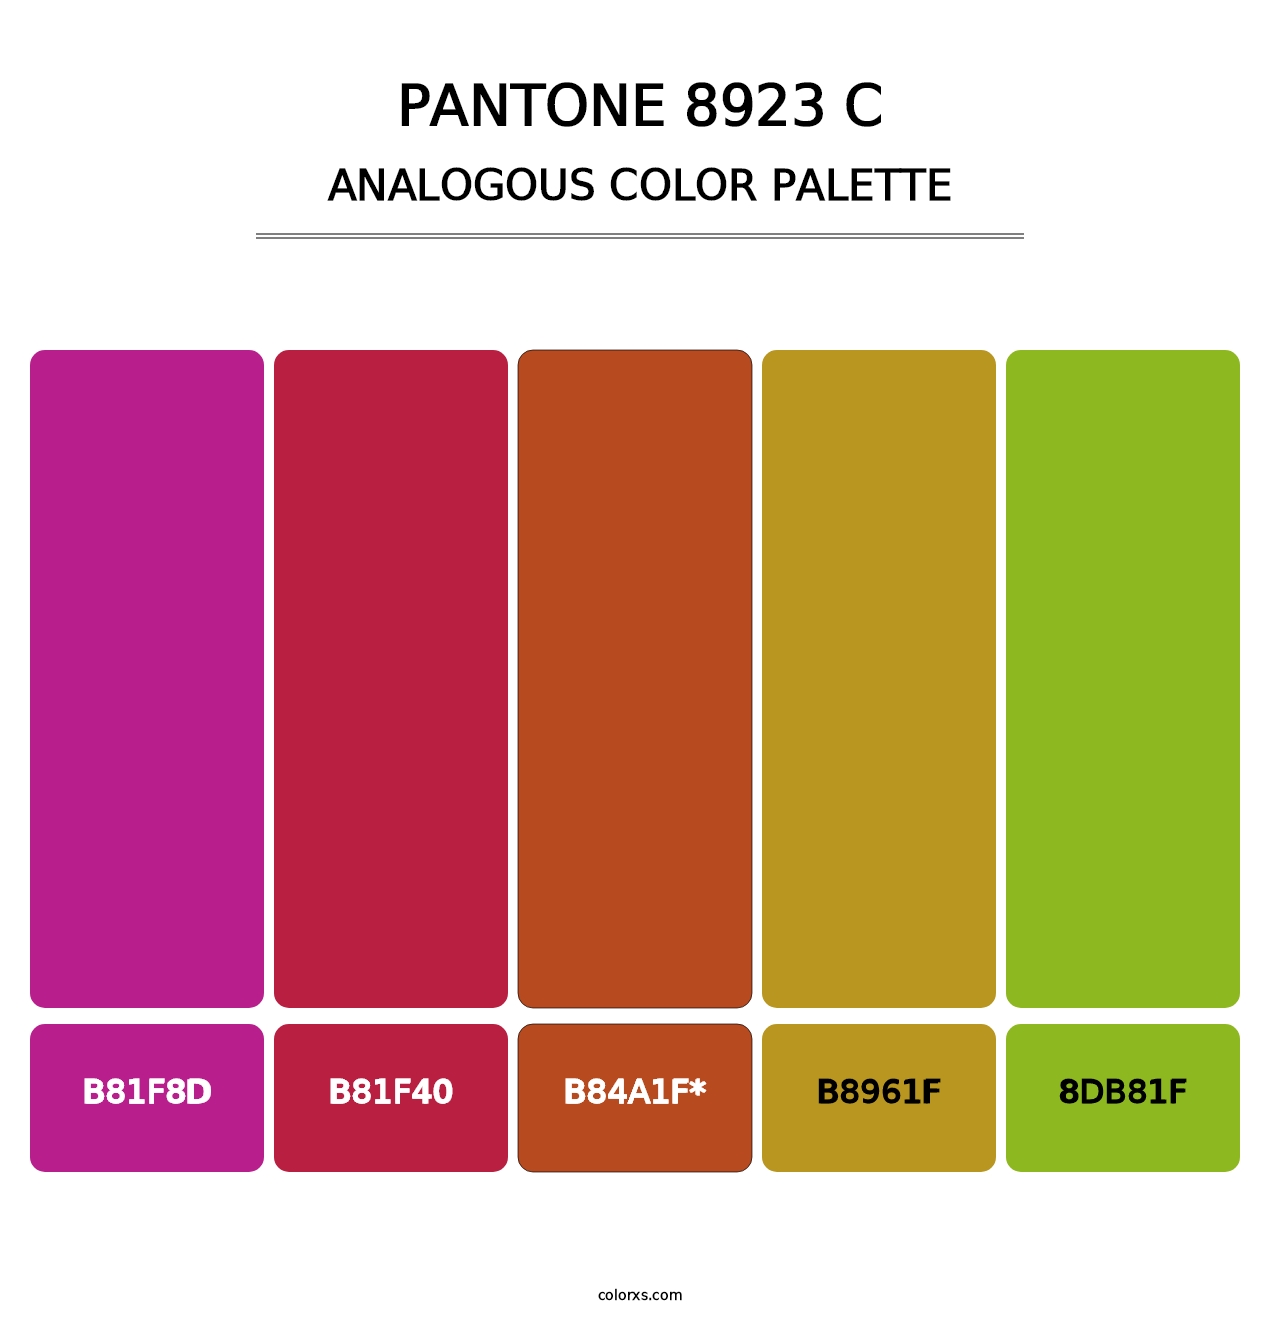 PANTONE 8923 C - Analogous Color Palette